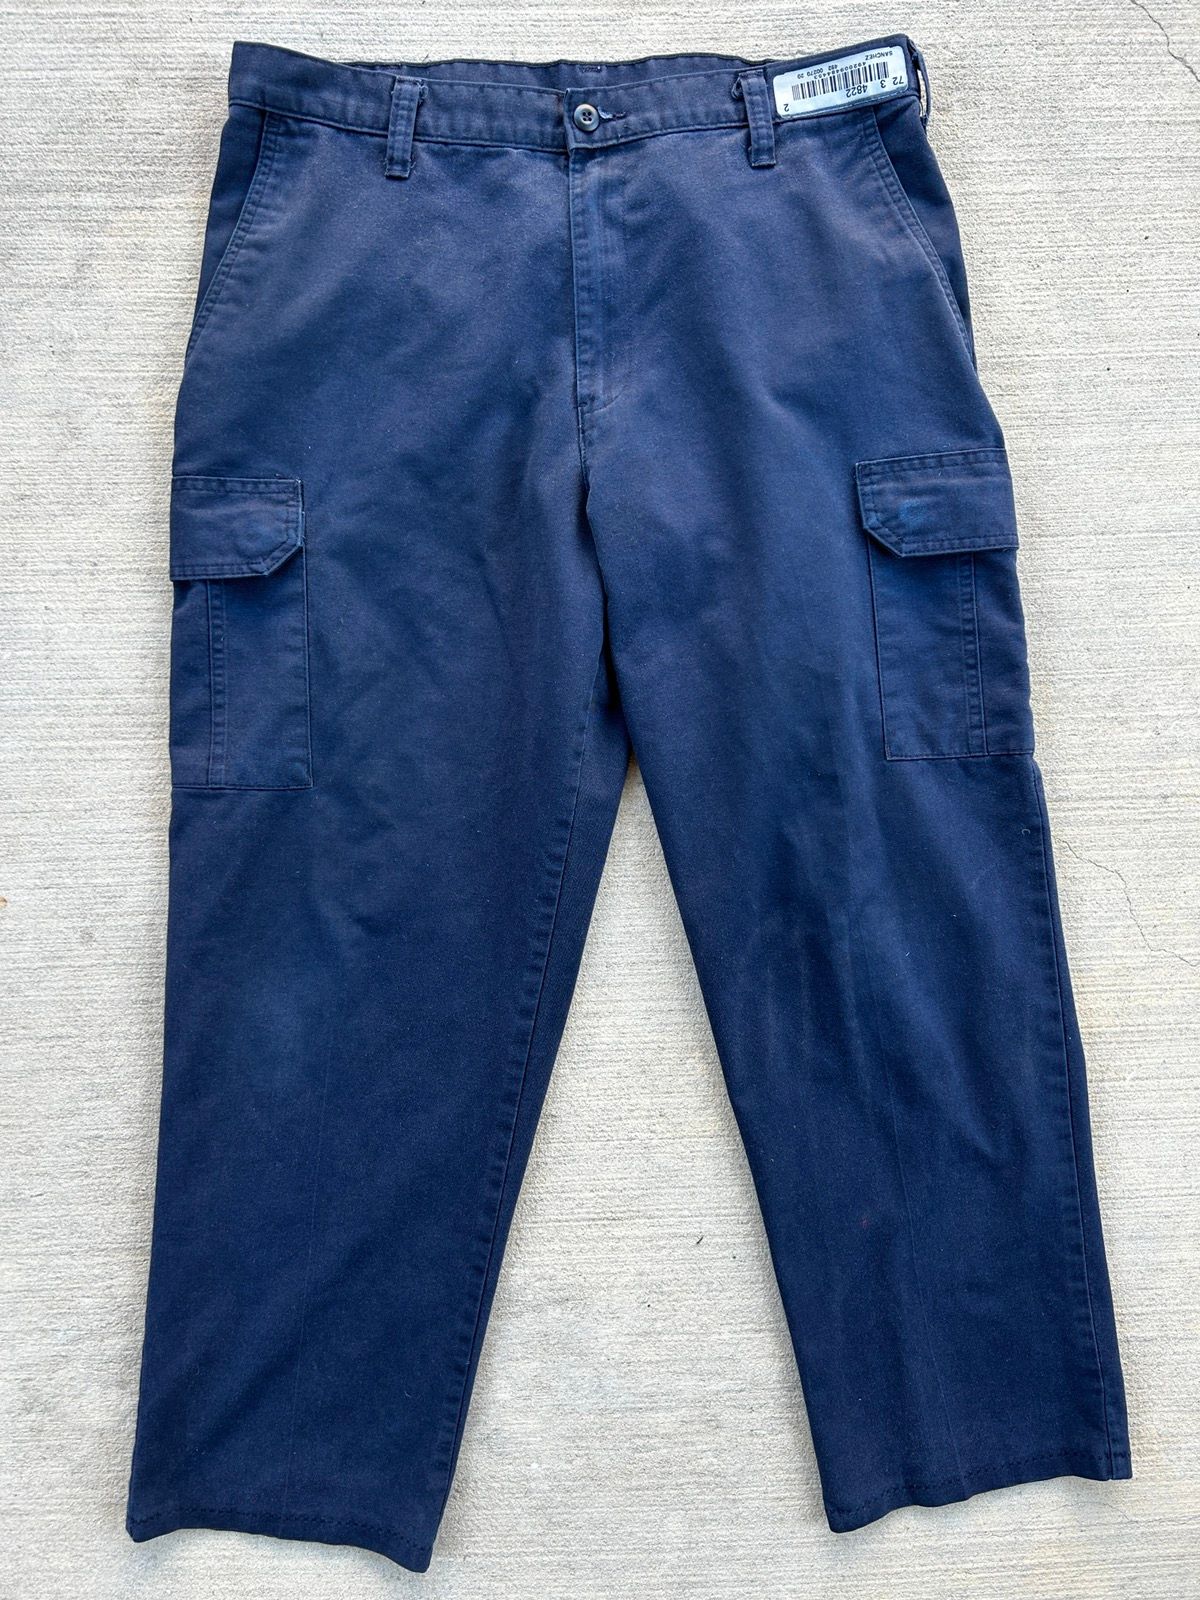 Vintage Cintas cargo work pants | Grailed